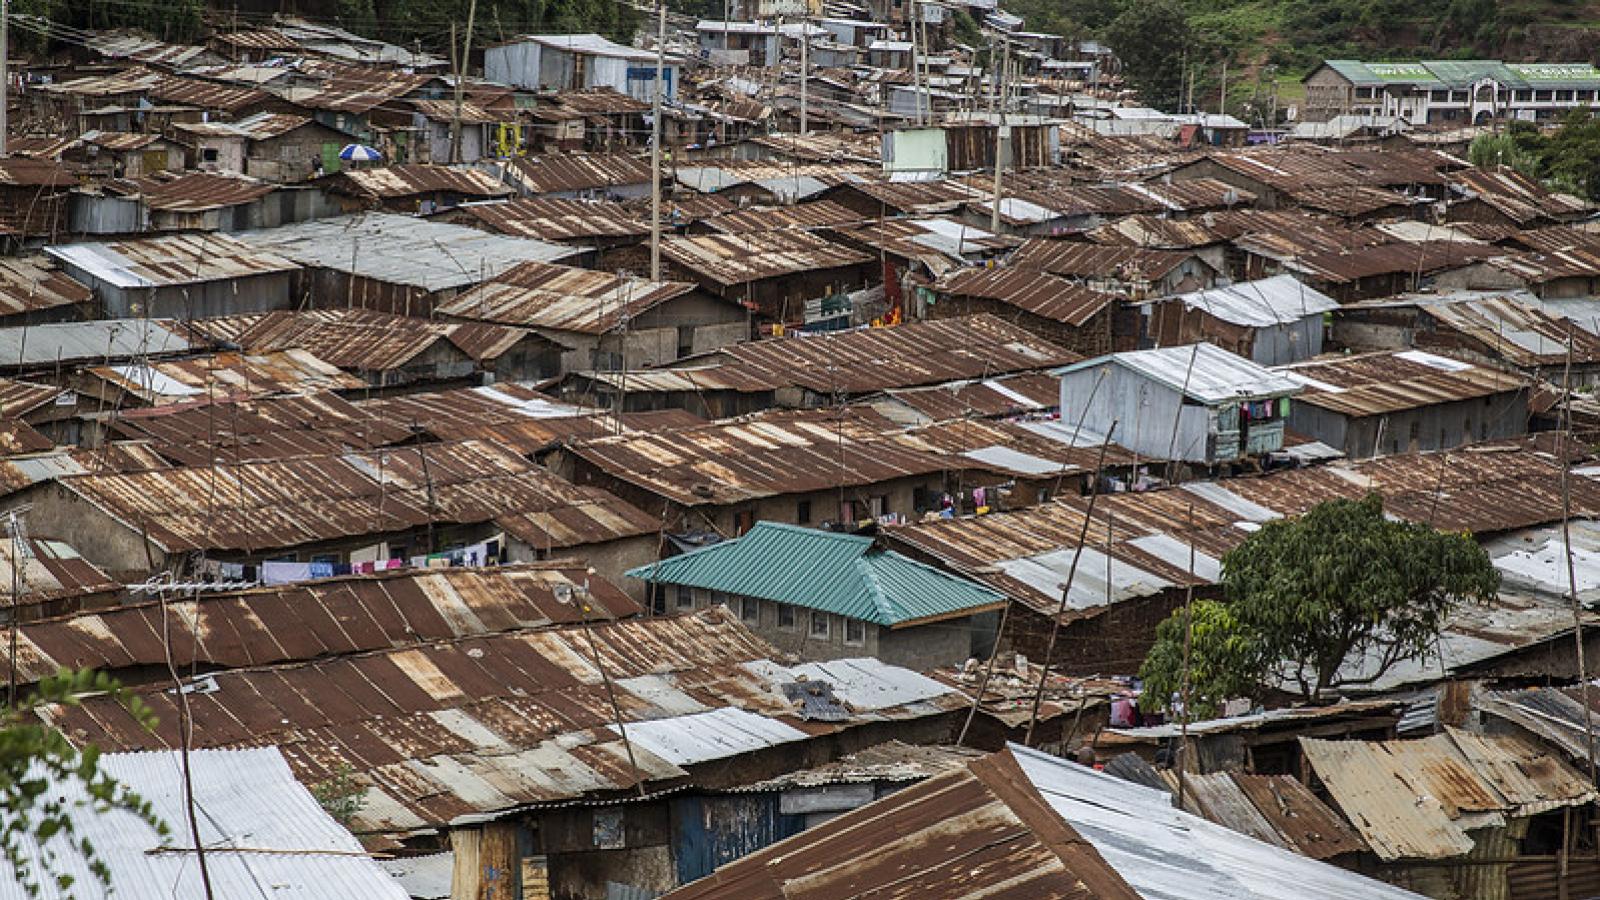 Rusted metal rooftops in Kibera slum, Kenya